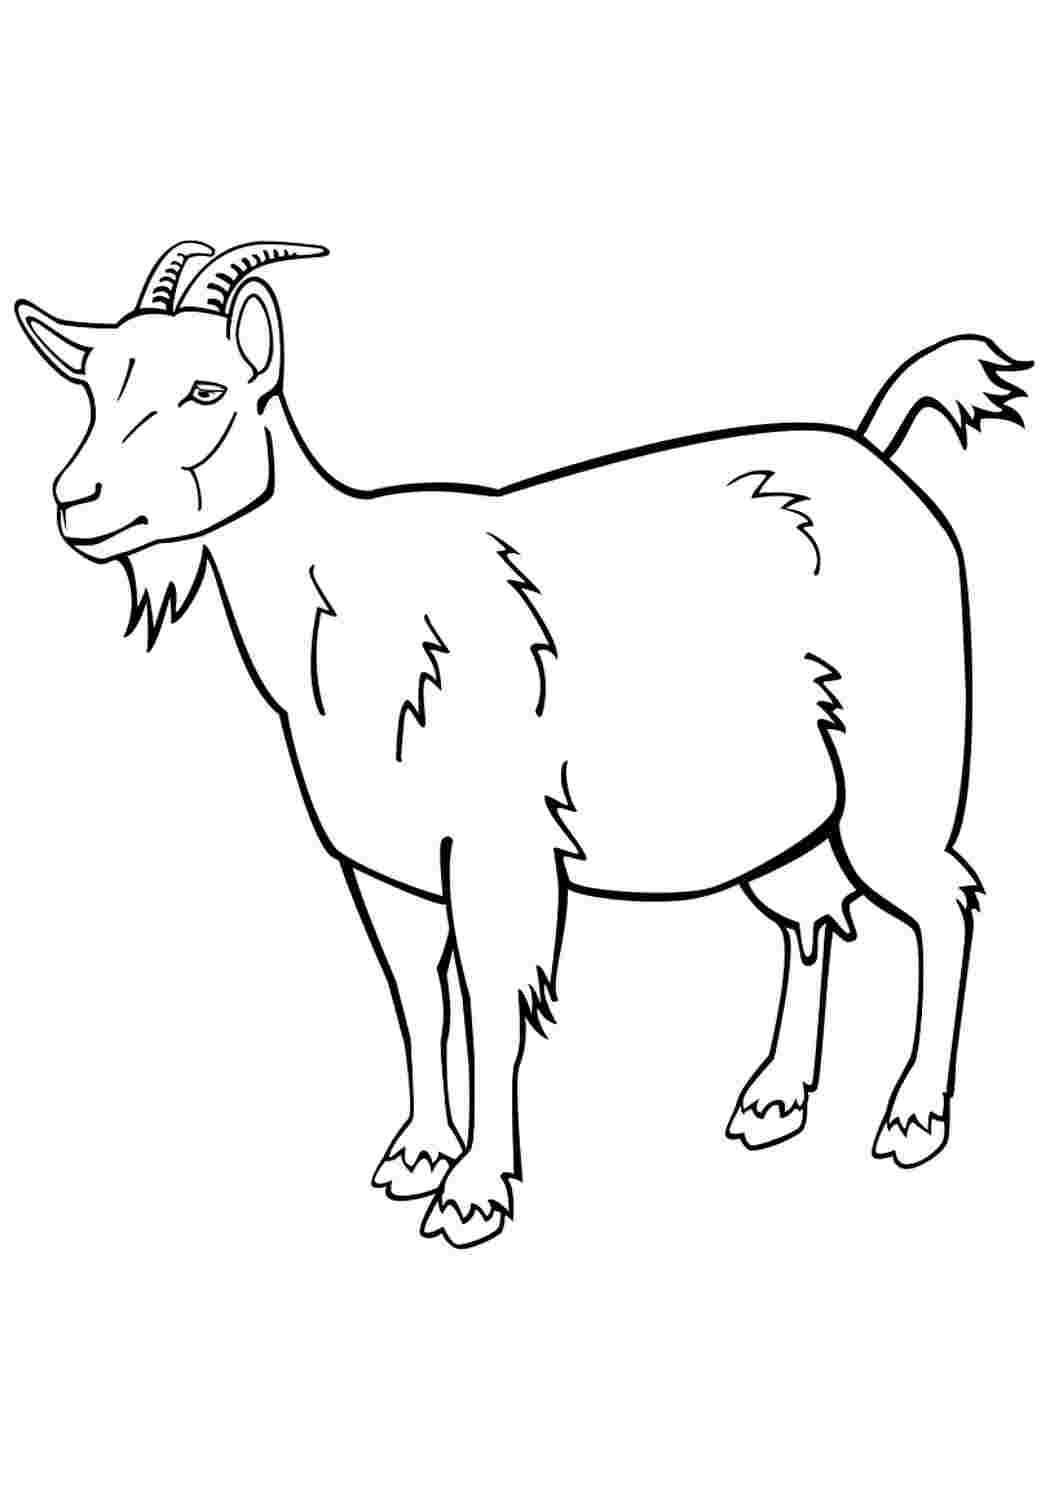 Рисунок козы для раскрашивания